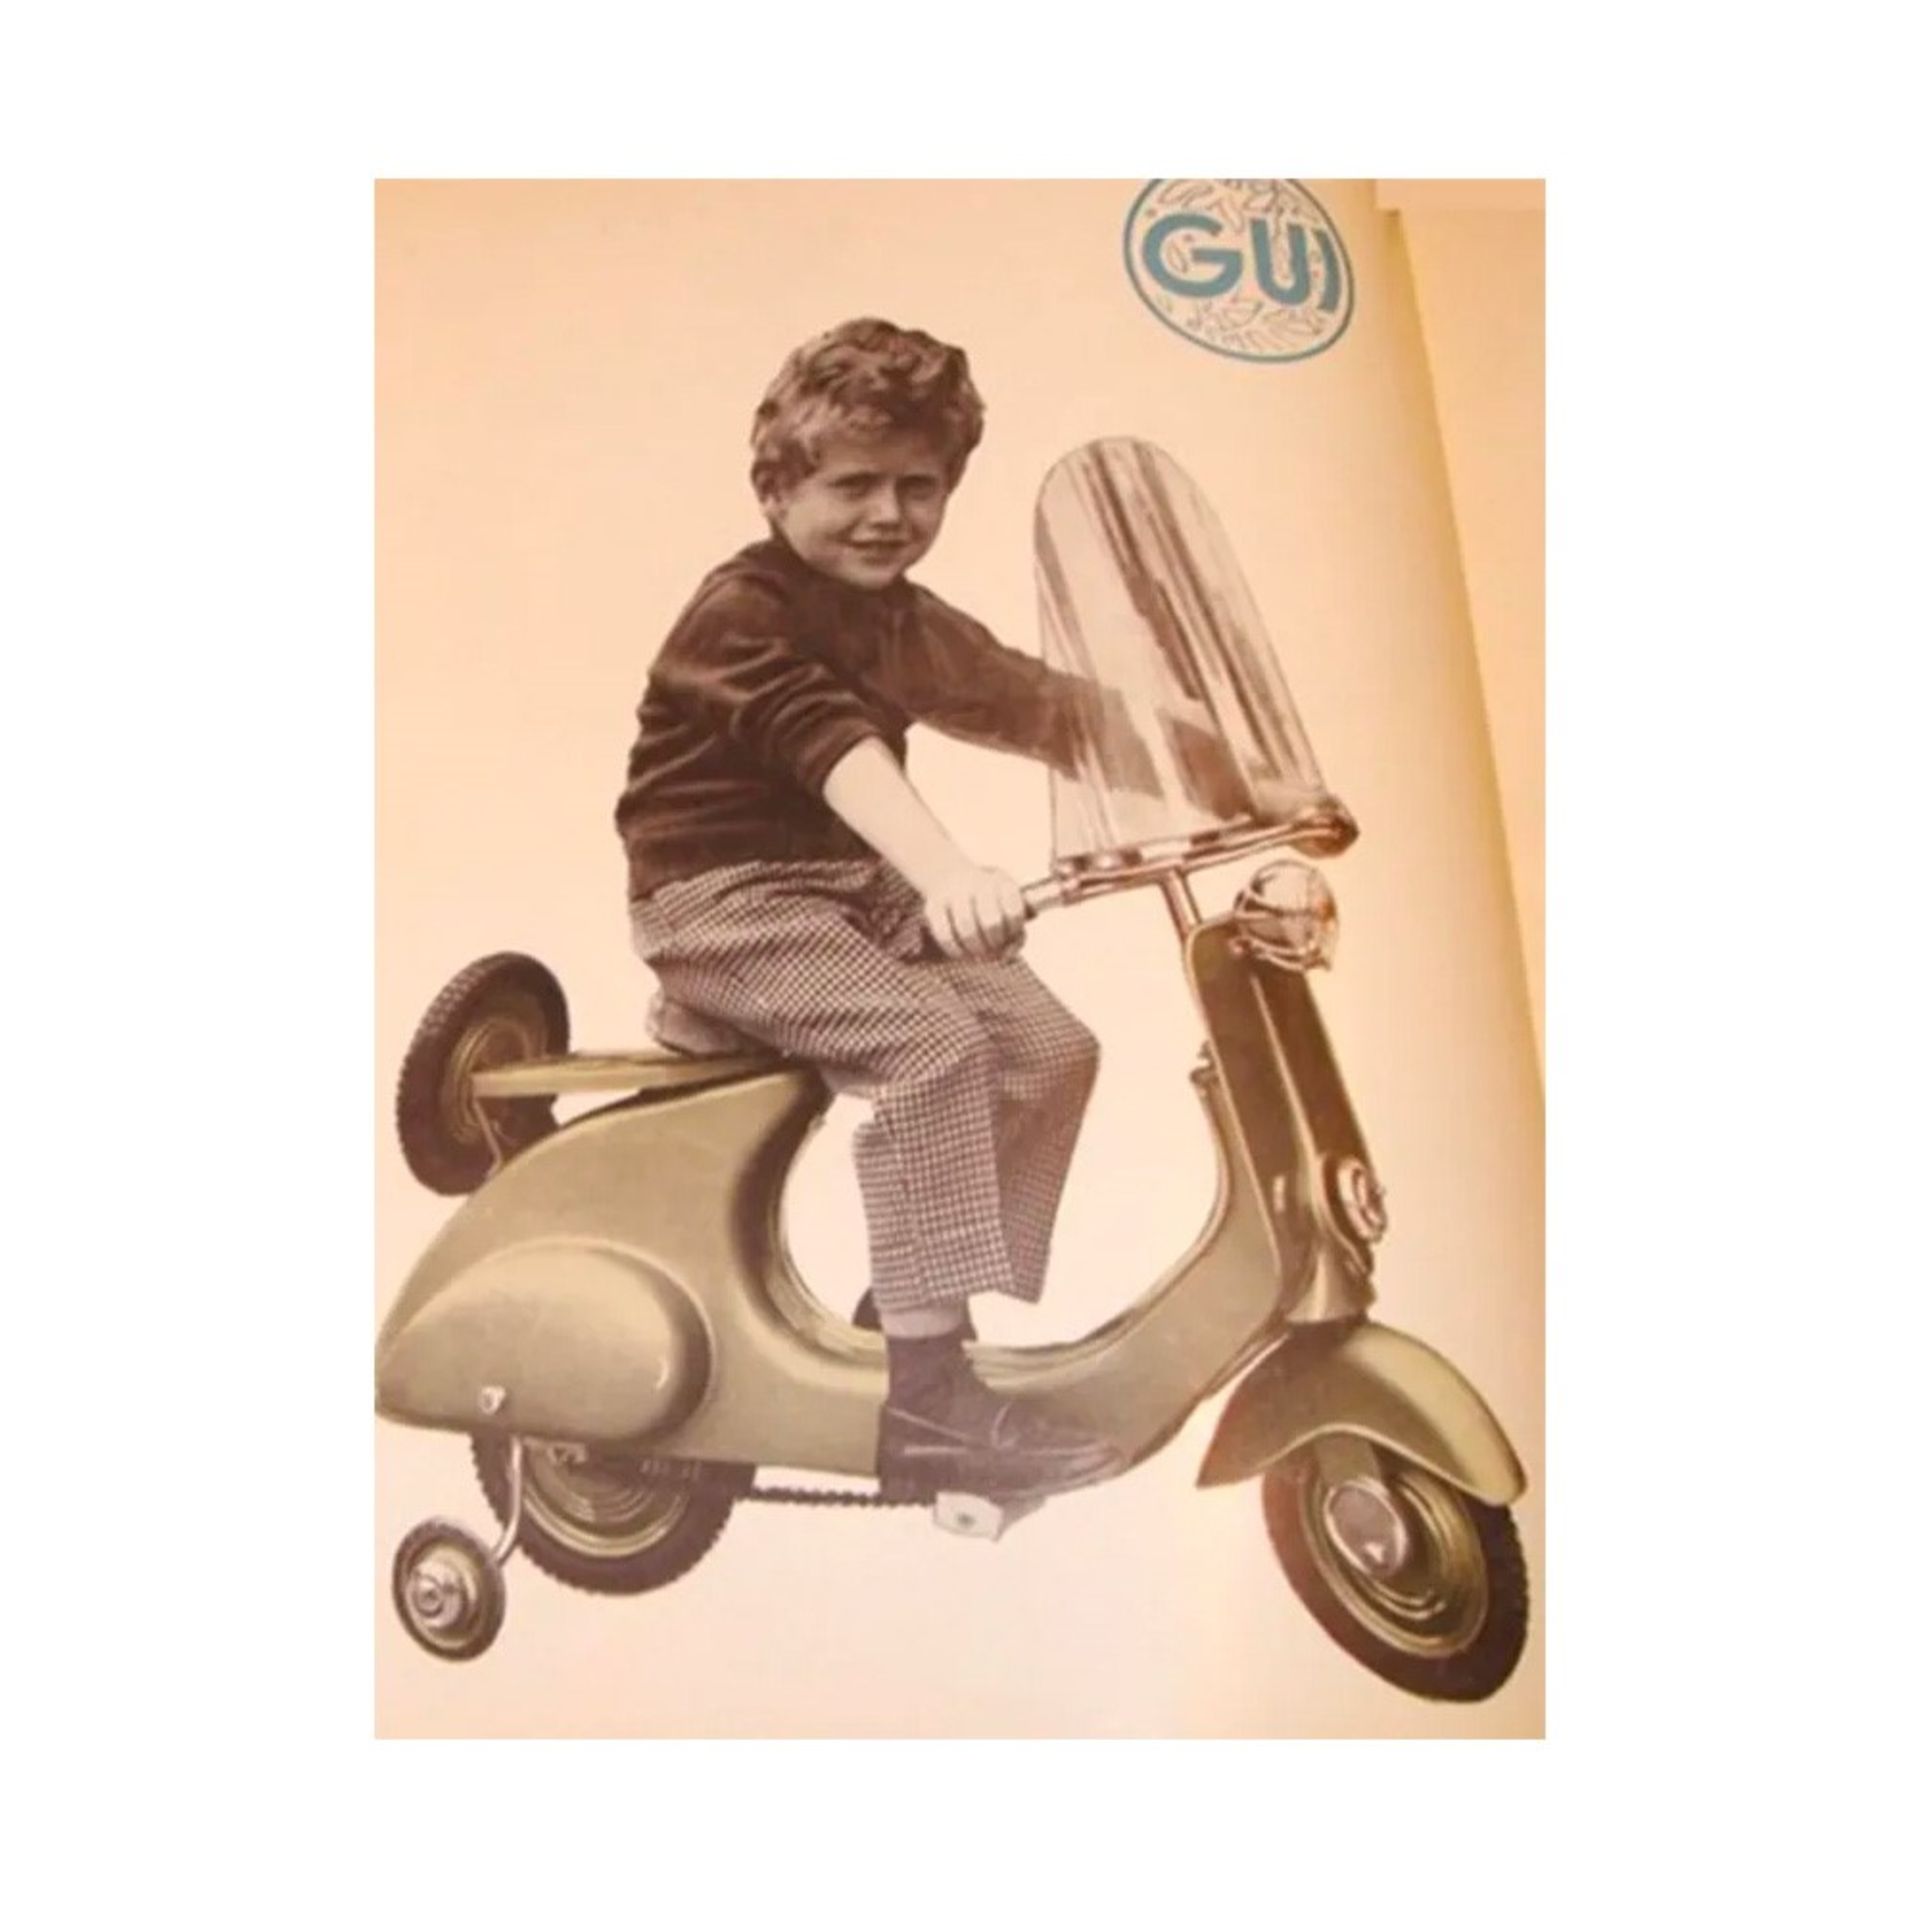 Pierre Gui - Vespa a pedali, 1950-1960 - Image 5 of 6